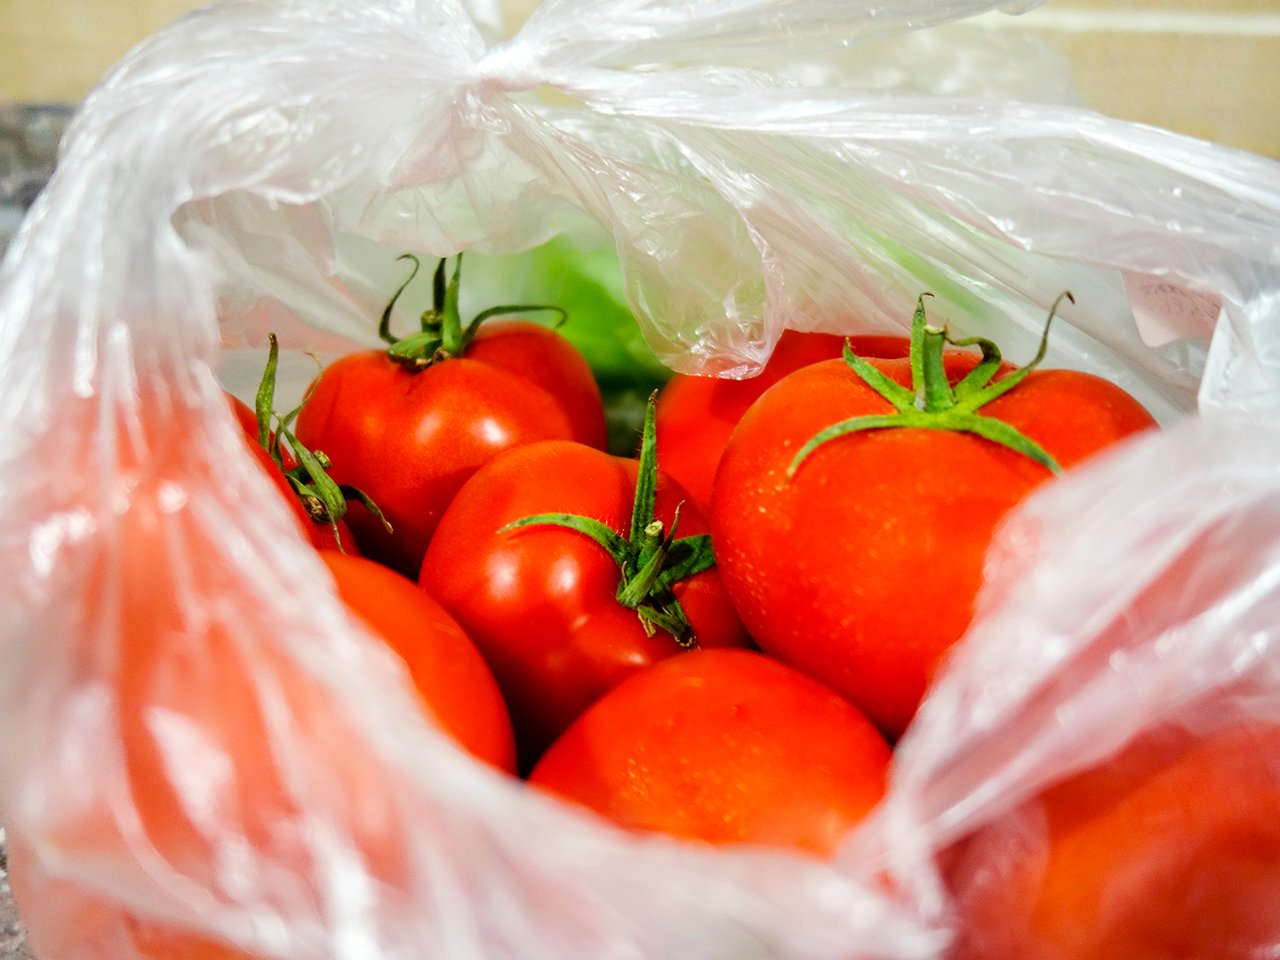 reuse single-use plastics: Tomatoes in plastic bag